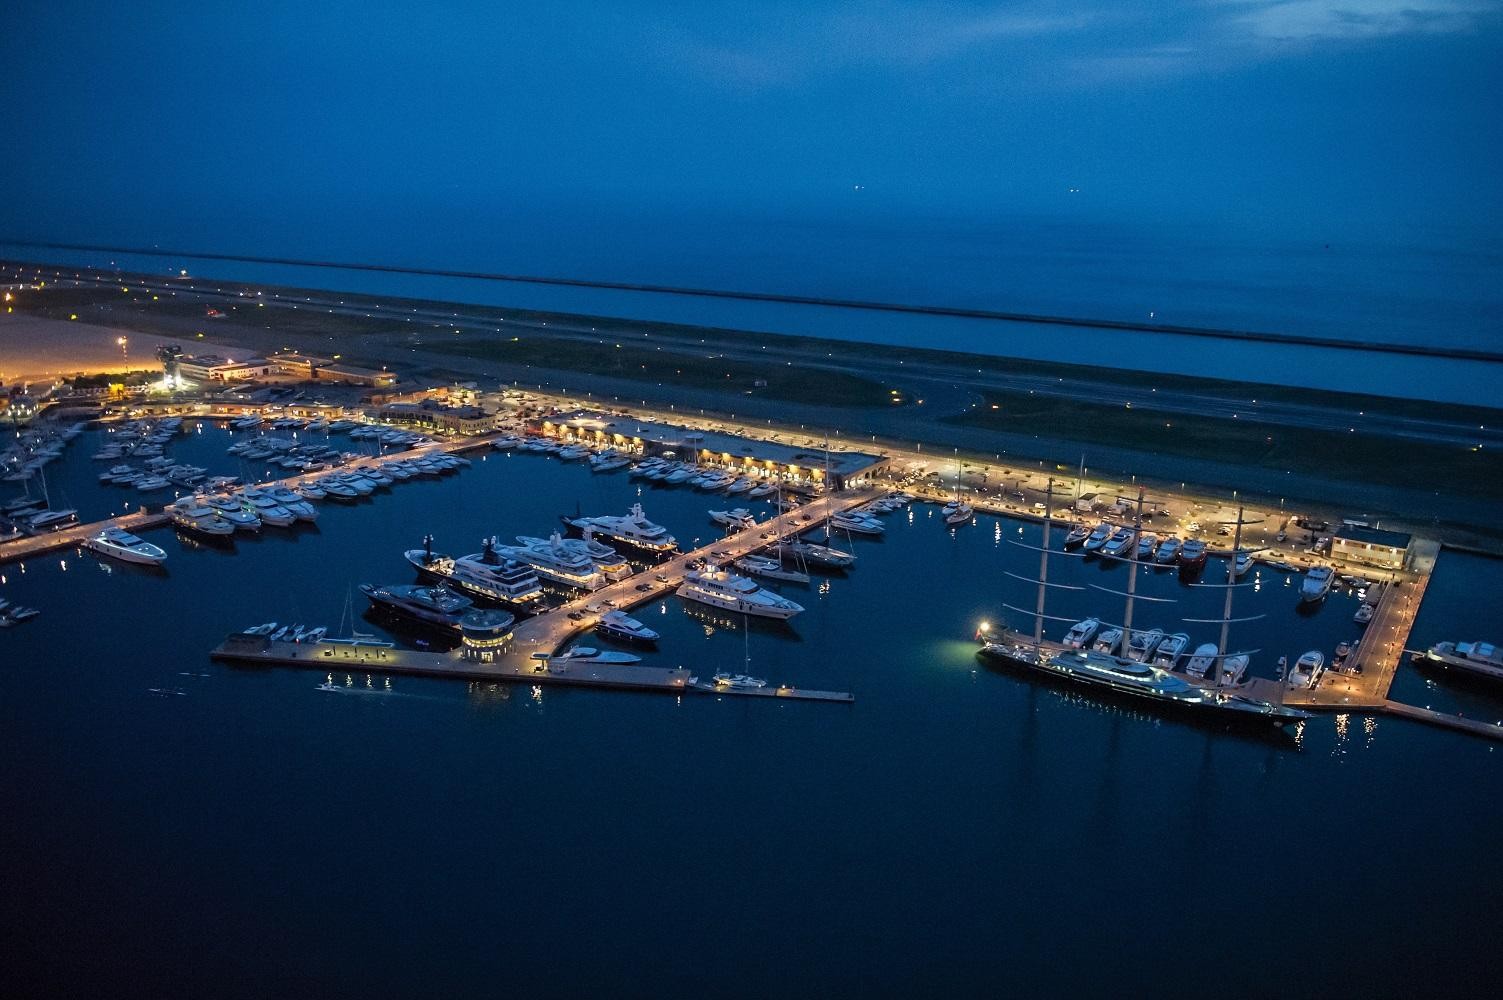 Liguria For Yachting, la rete che unisce i Marina liguri, da domani al 16 settembre 2018 sarà al Cannes Yachting Festival